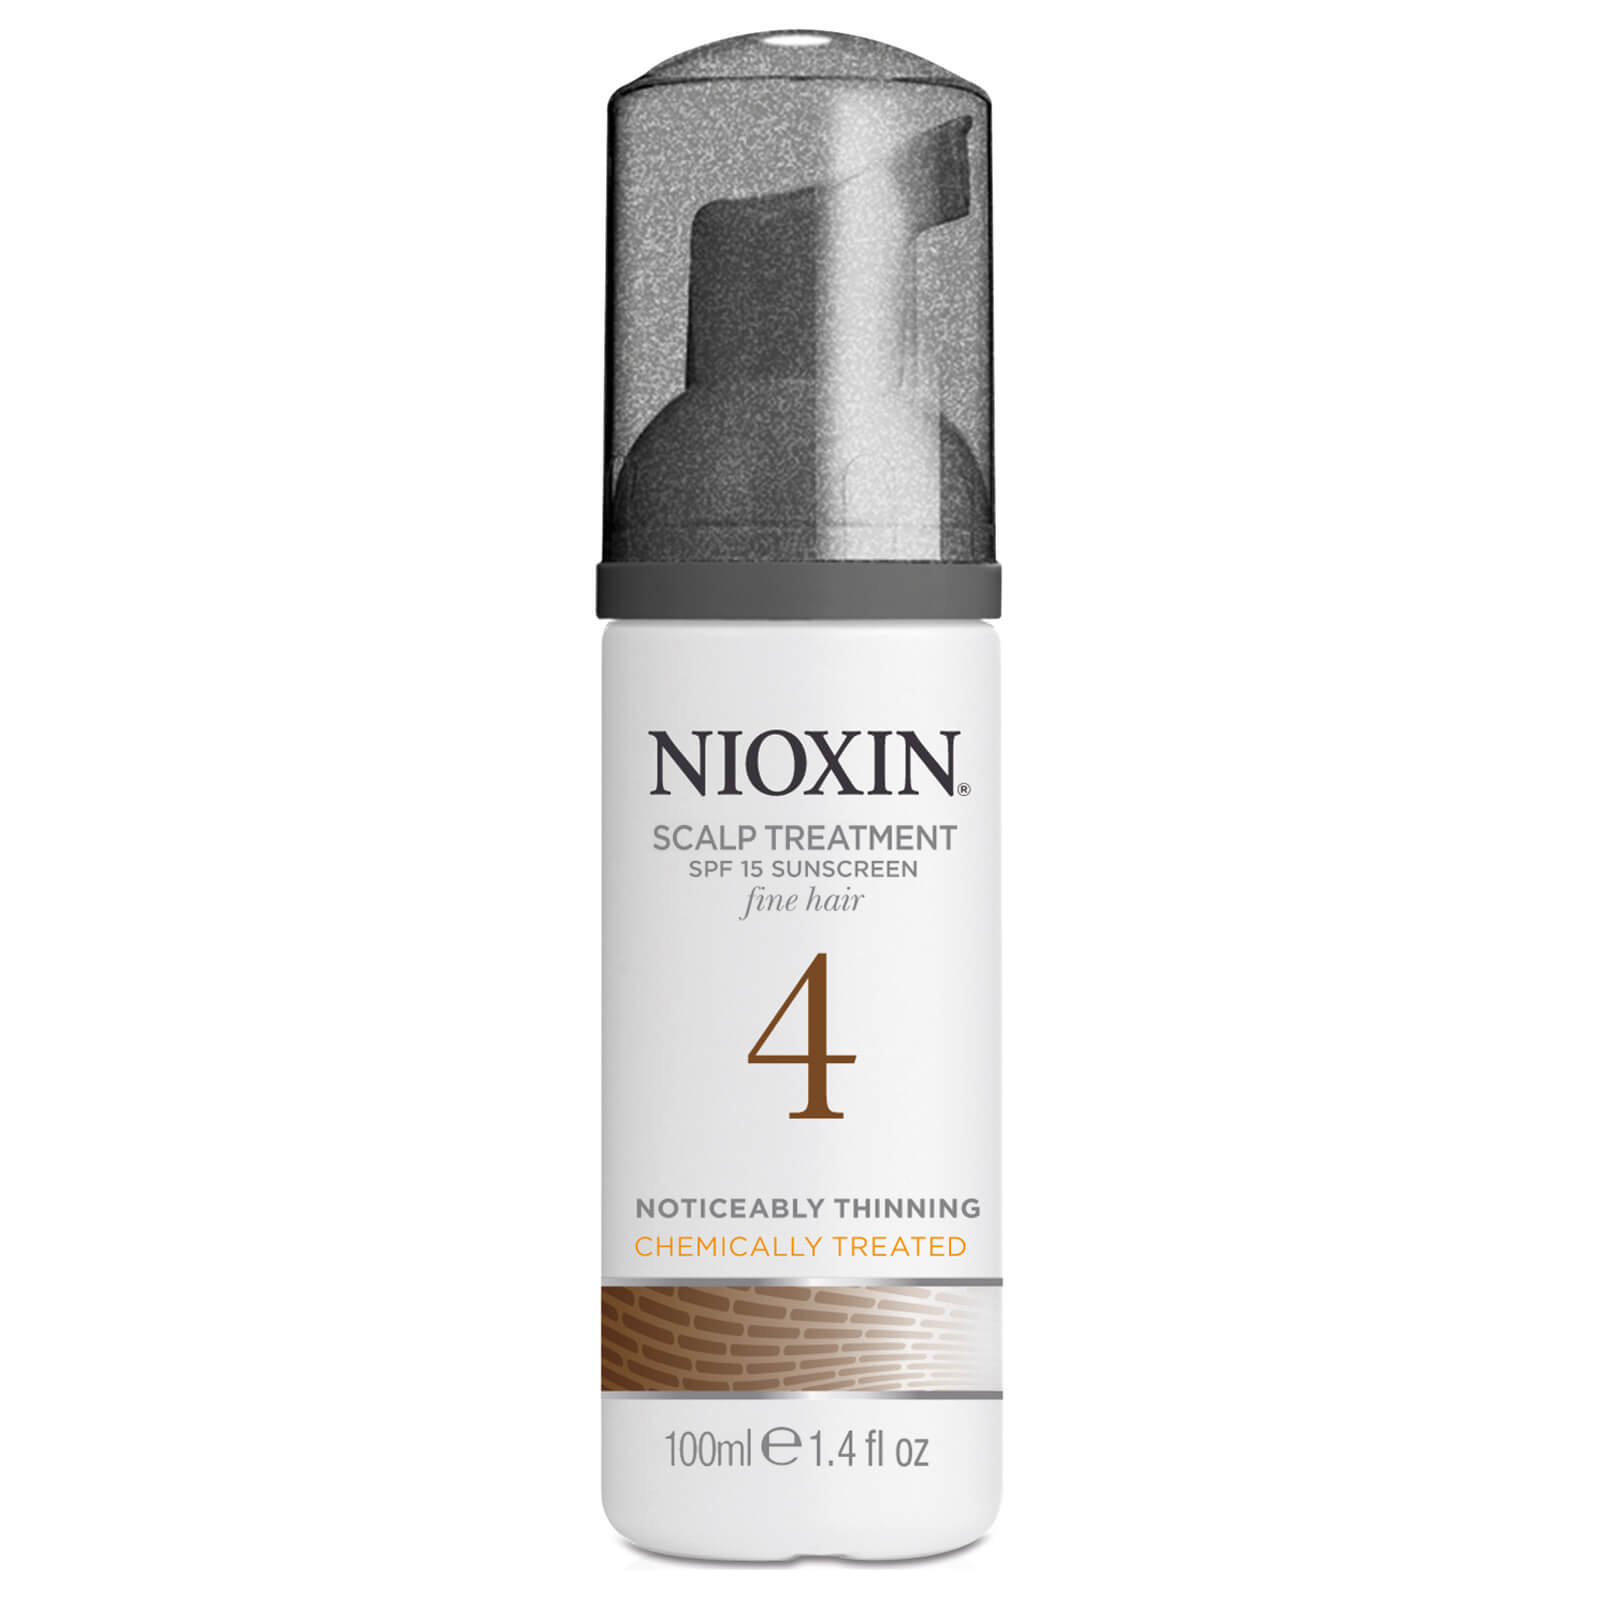 Kit Nioxin System 4 - cabello fino teñido y adelgazamiento significativo del cabello (3 productos)